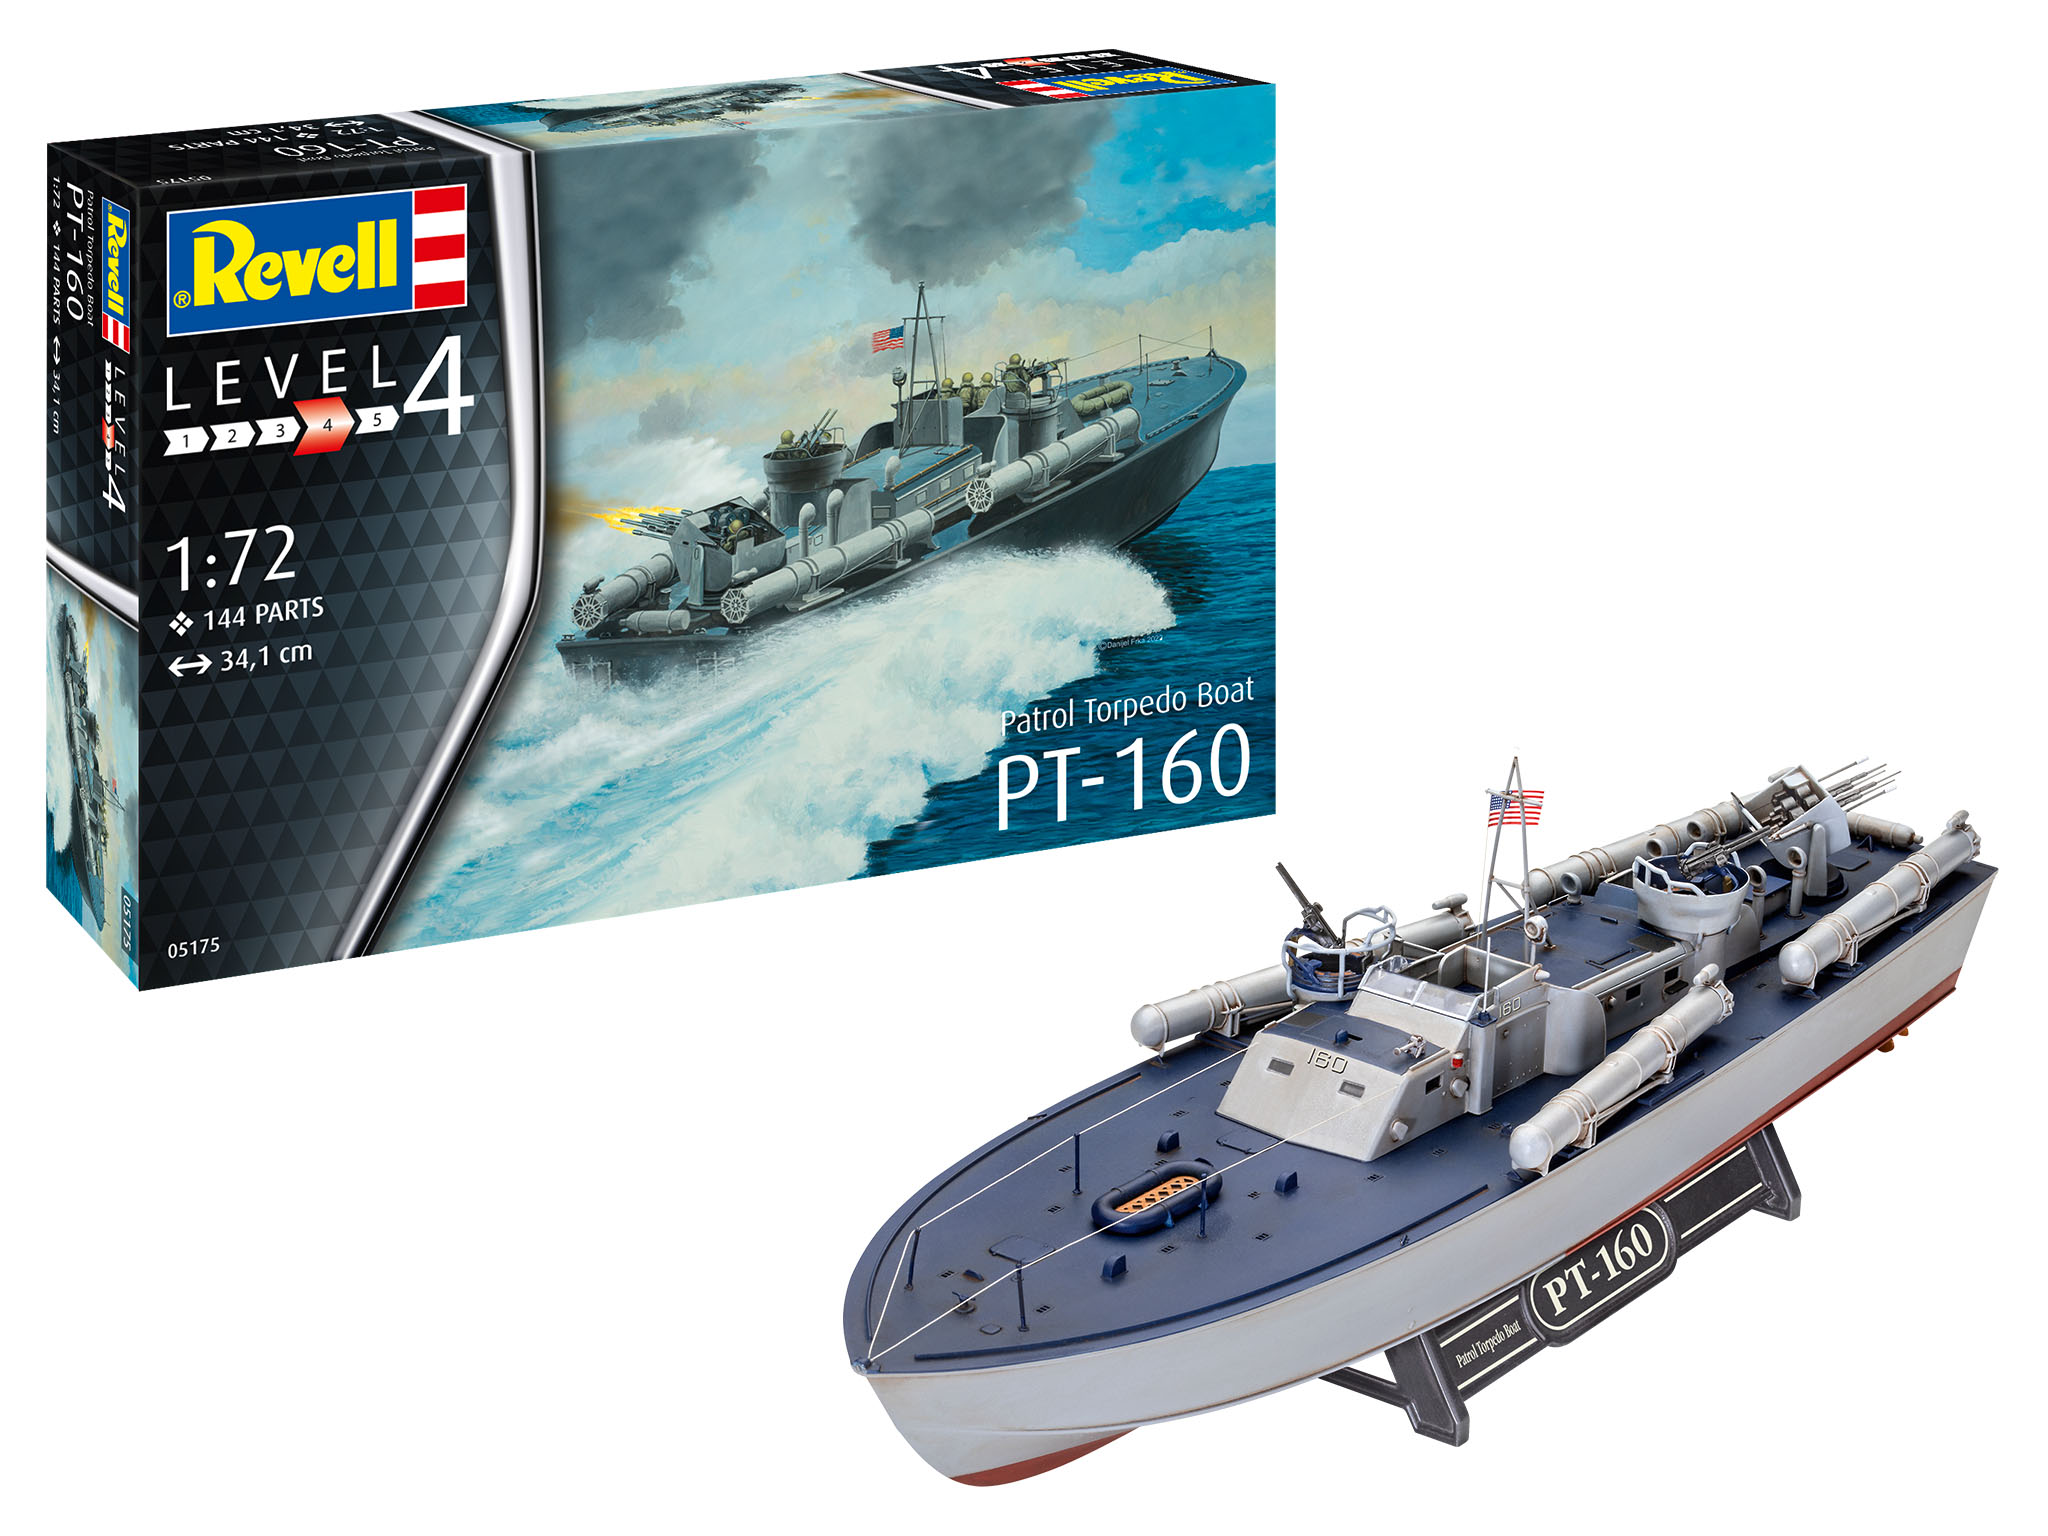 revell-05175-Patrol-Torpedo-Boat-PT-160